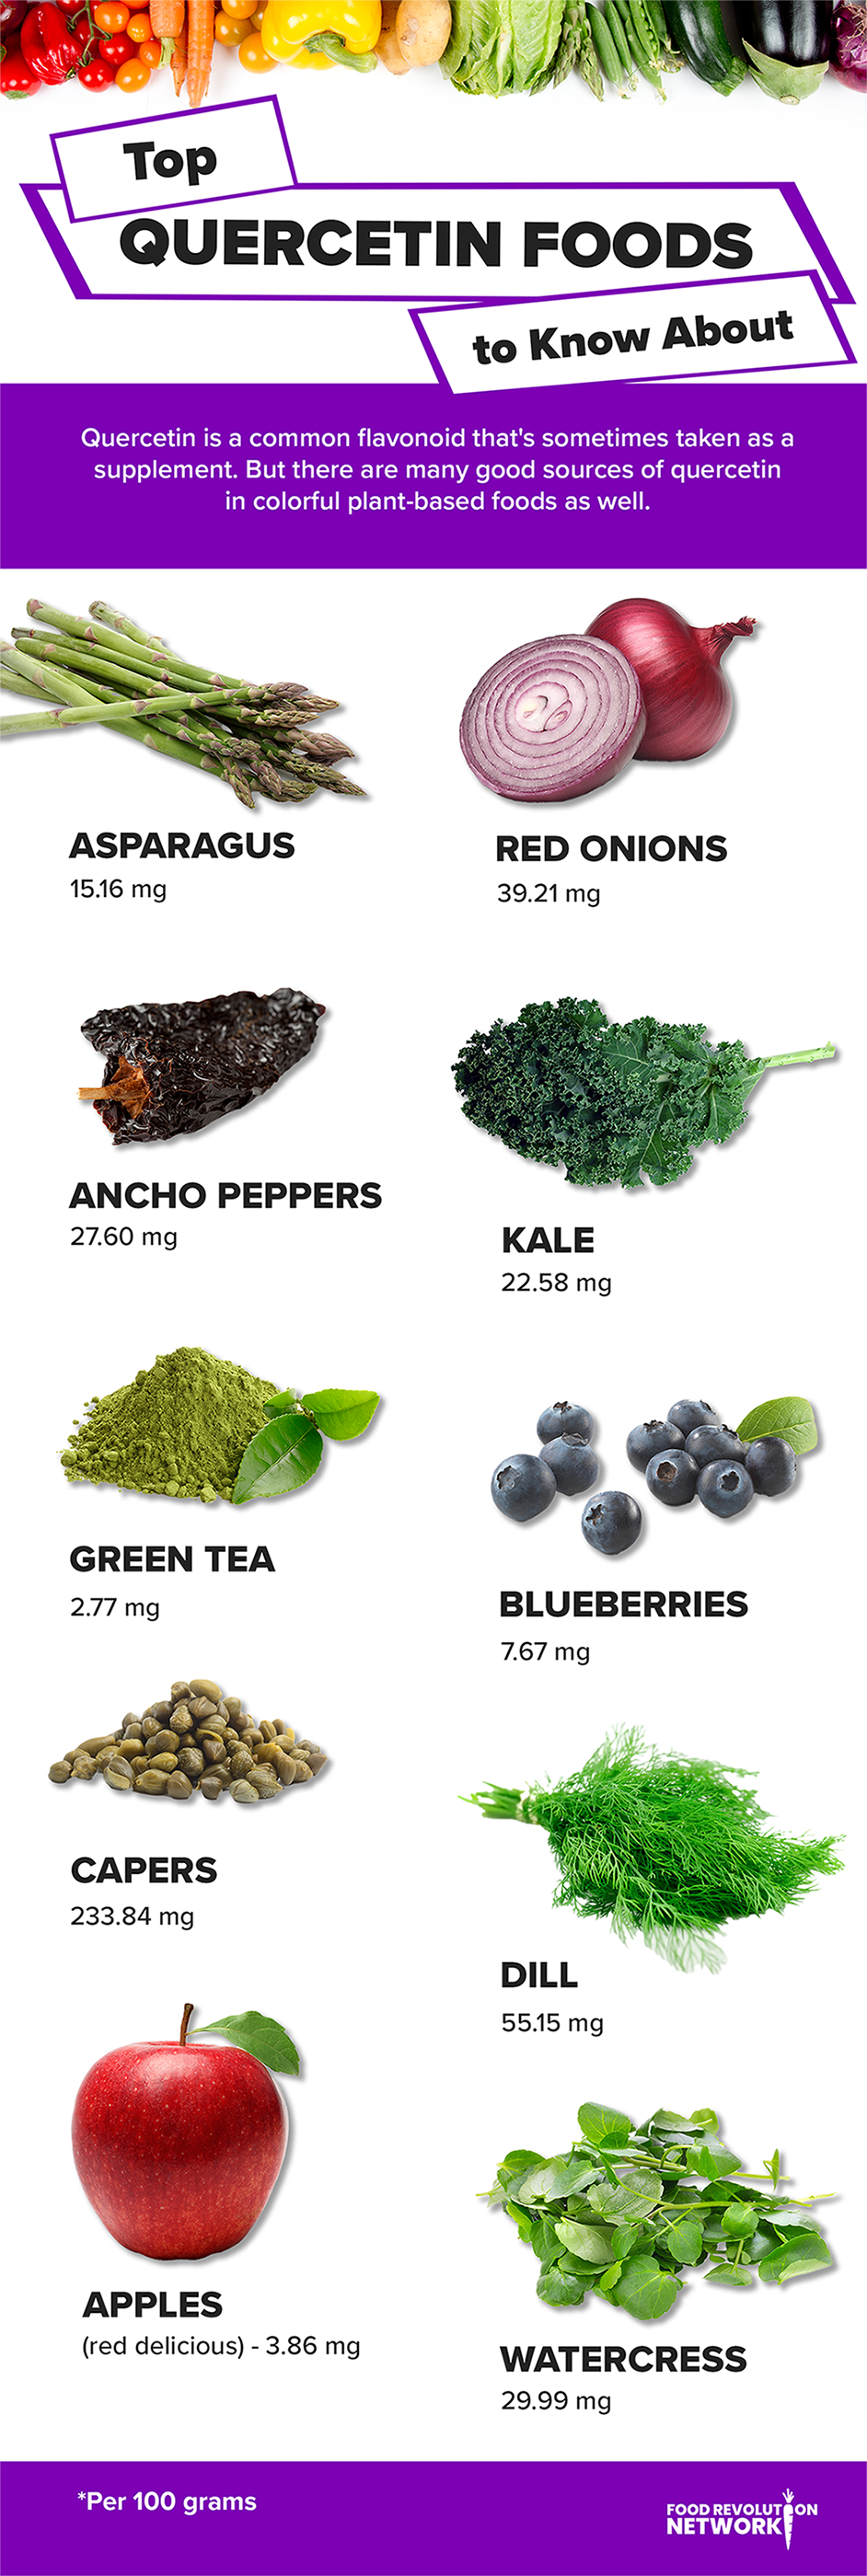 Top Quercetin Foods Infographic